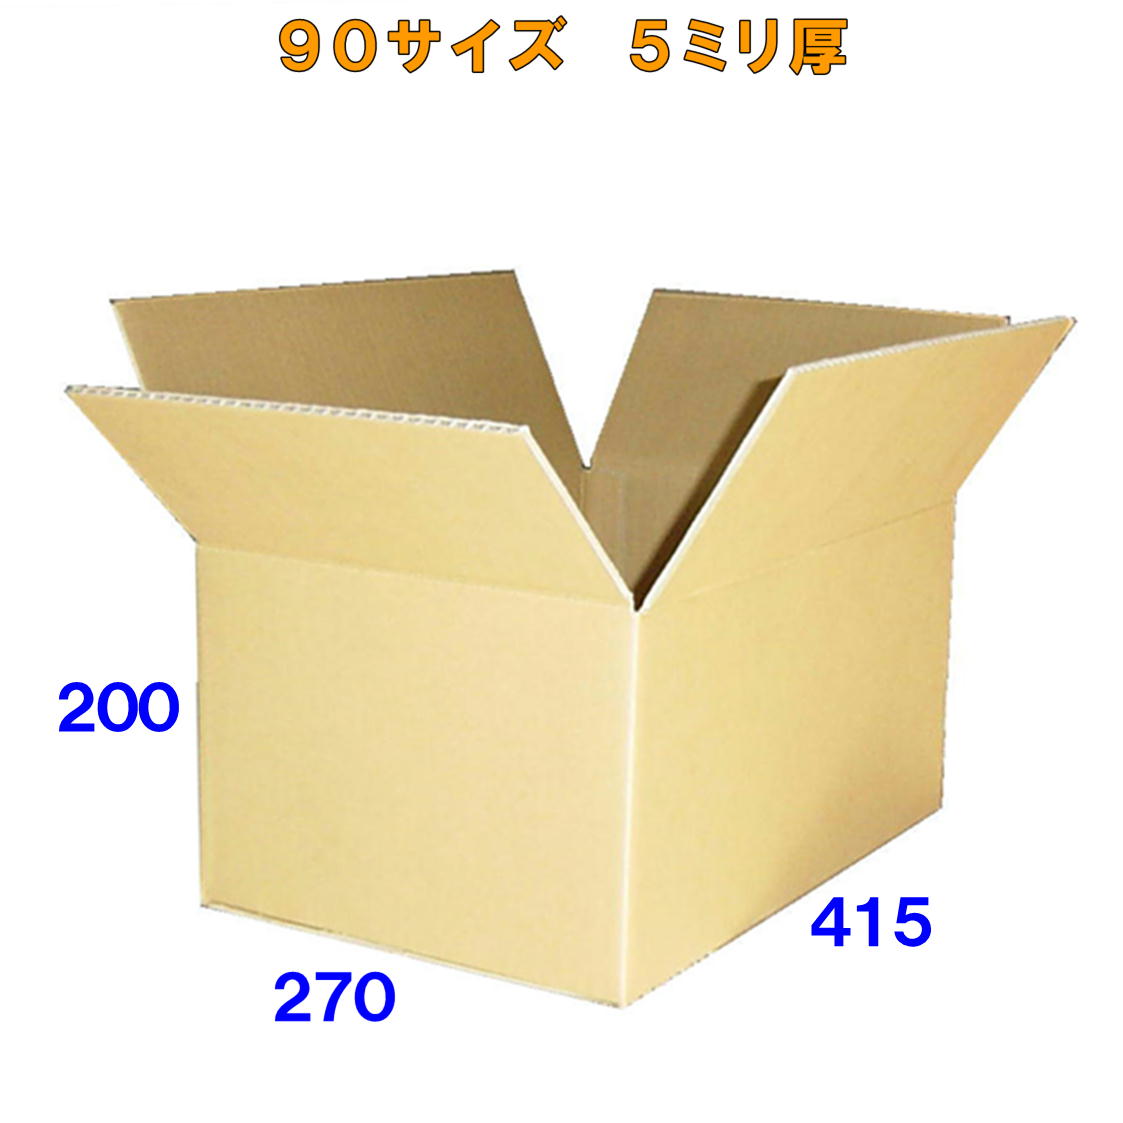 【あす楽】100 (90) サイズ 段ボール 箱 30枚(C5AF) 5